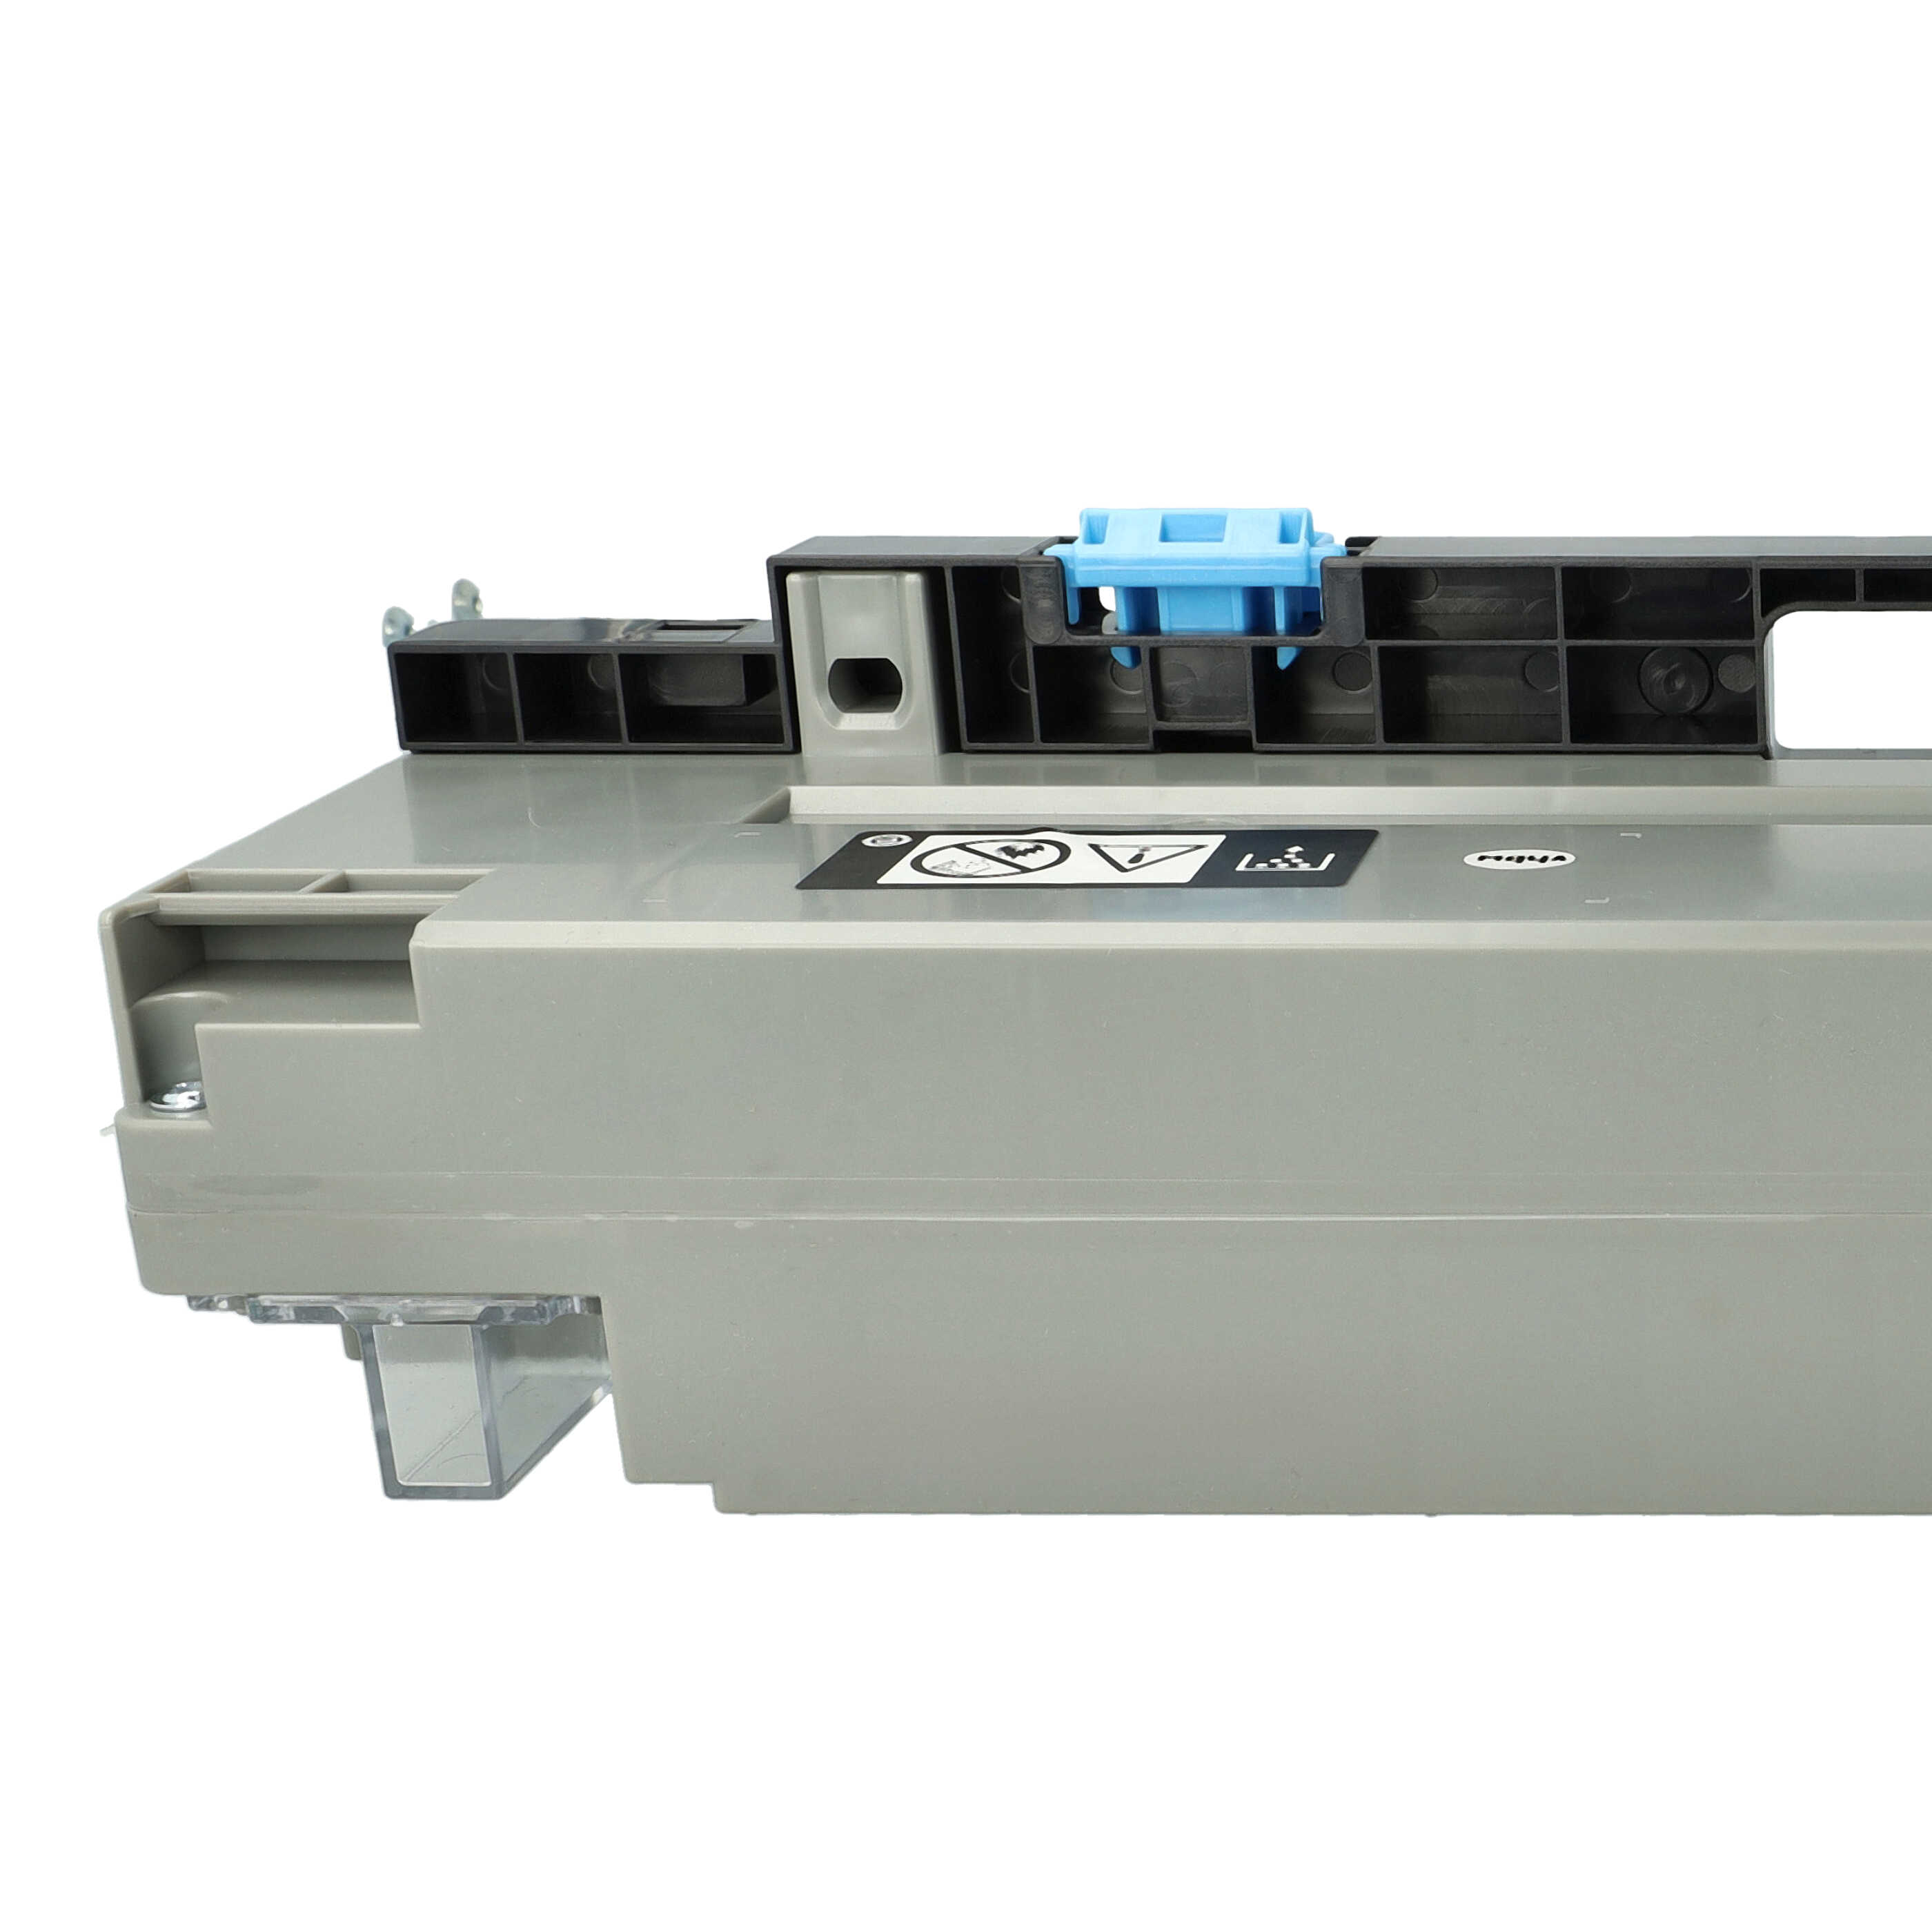 Collecteur de toner remplace Konica Minolta pour imprimante laser Olivetti D-Color 259 - gris